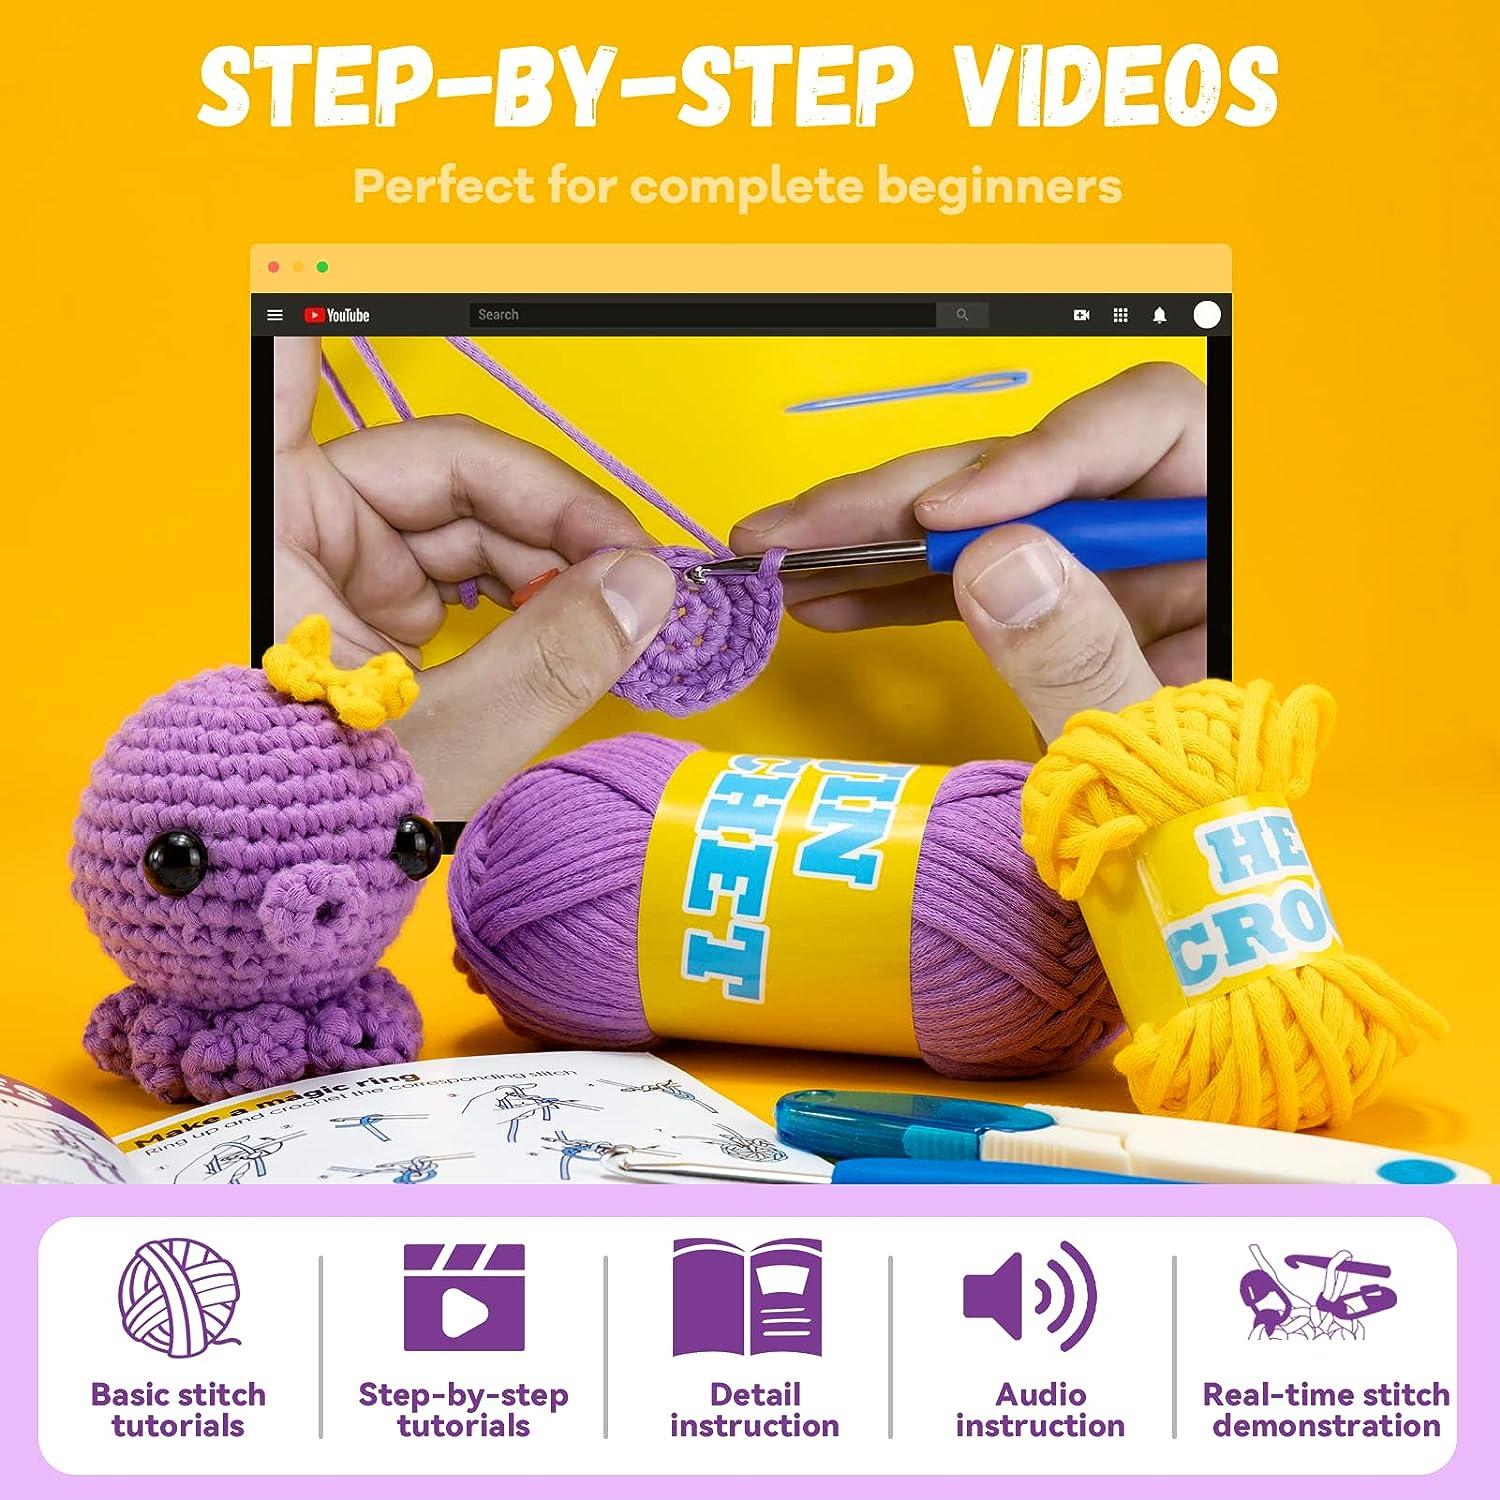  HEJIN Crochet Kit for Beginners, 6 PCS Beginner Crochet kit for  Adults Kids Include Videos Tutorials, 200% Yarn, Eyes, Stuffing, Crochet  Hook - Gift for Girl Birthday, Christmas